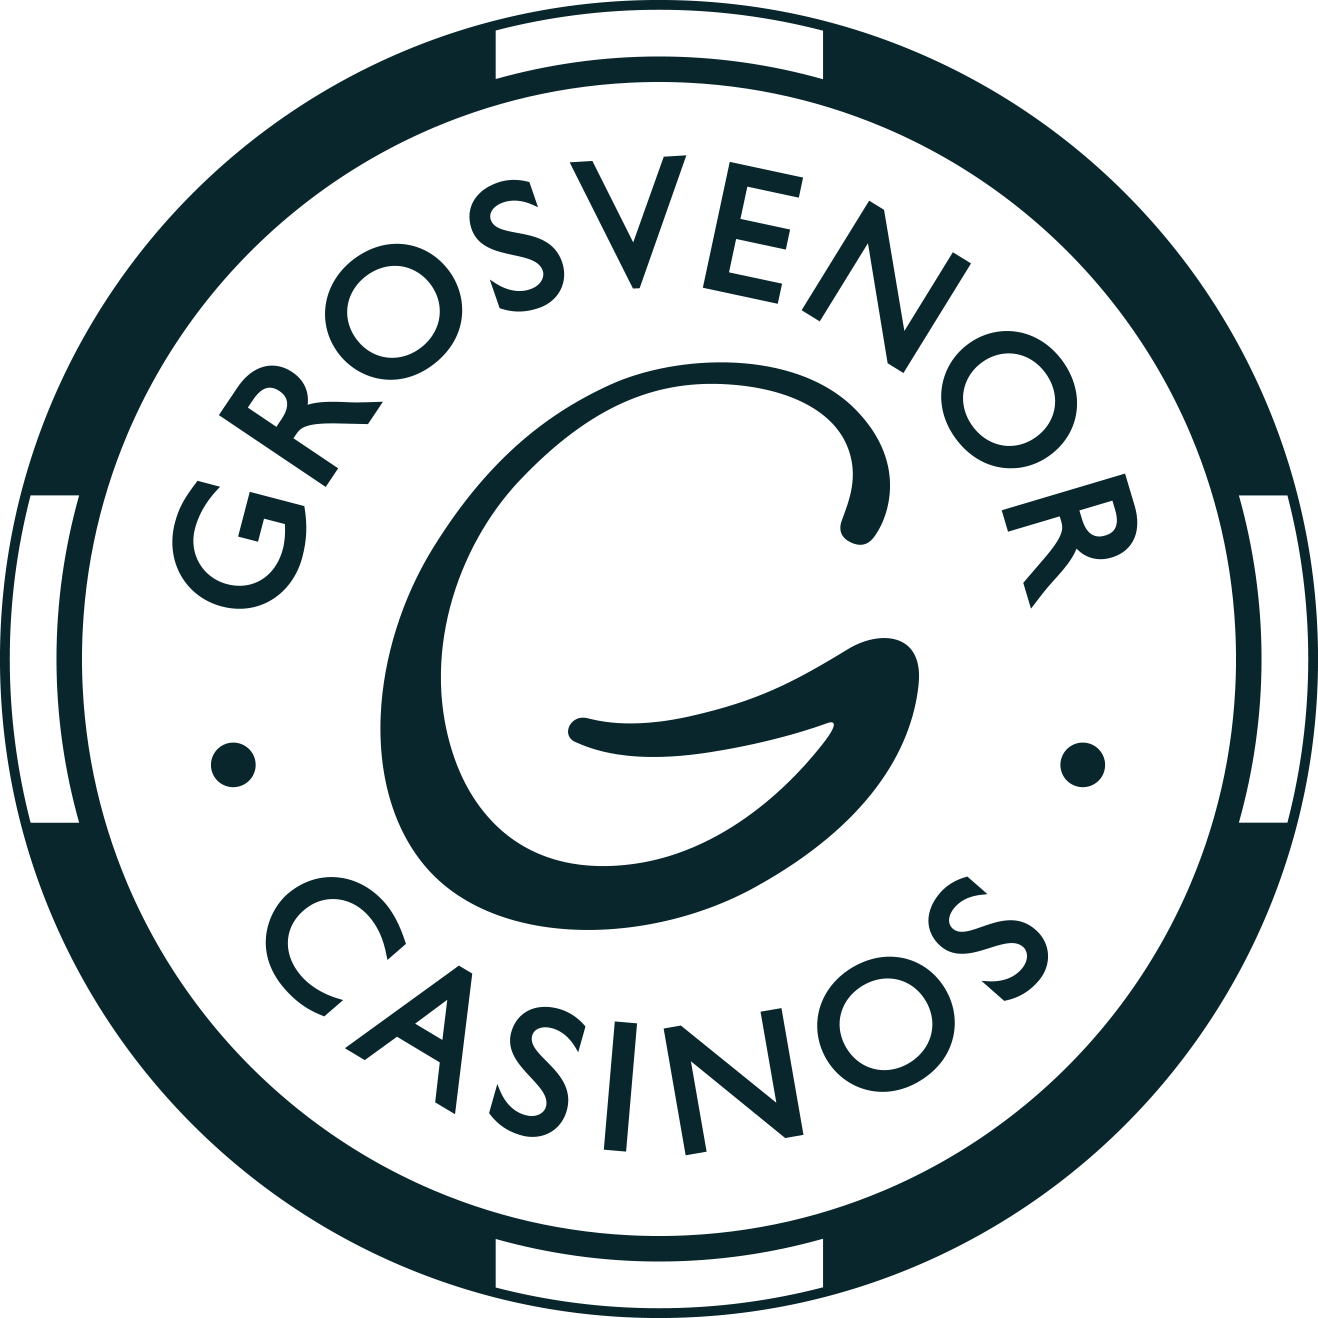 Grovensor Casino